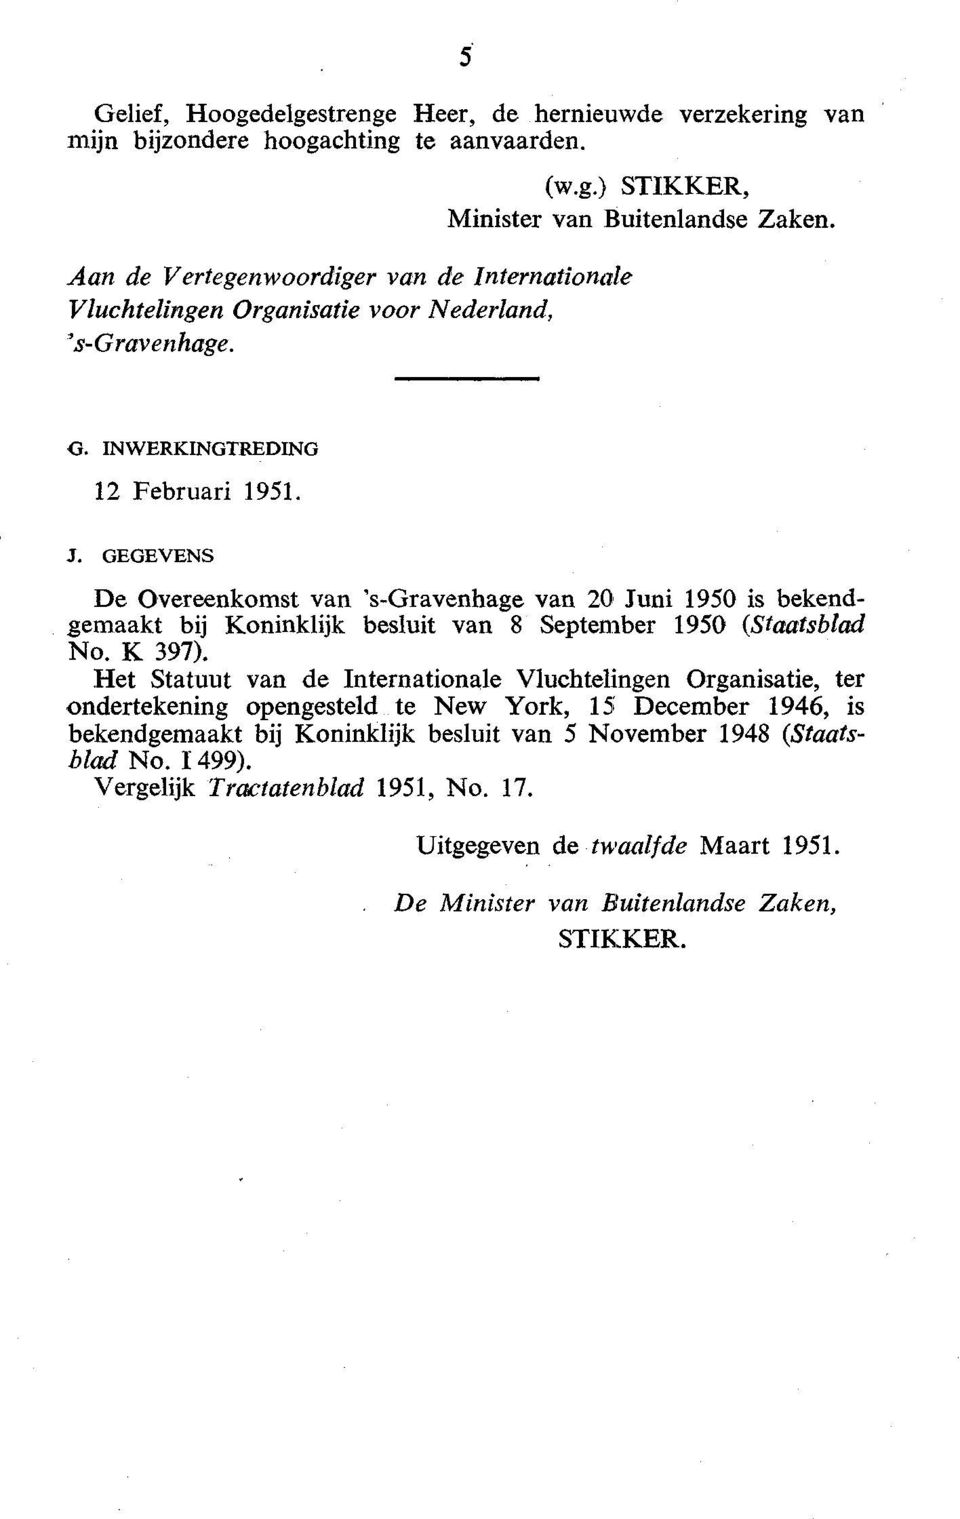 J. GEGEVENS De Overeenkomst van 's-gravenhage van 20 Juni 1950 is bekendgemaakt bij Koninklijk besluit van 8 September 1950 (Staatsblad No. K 397).